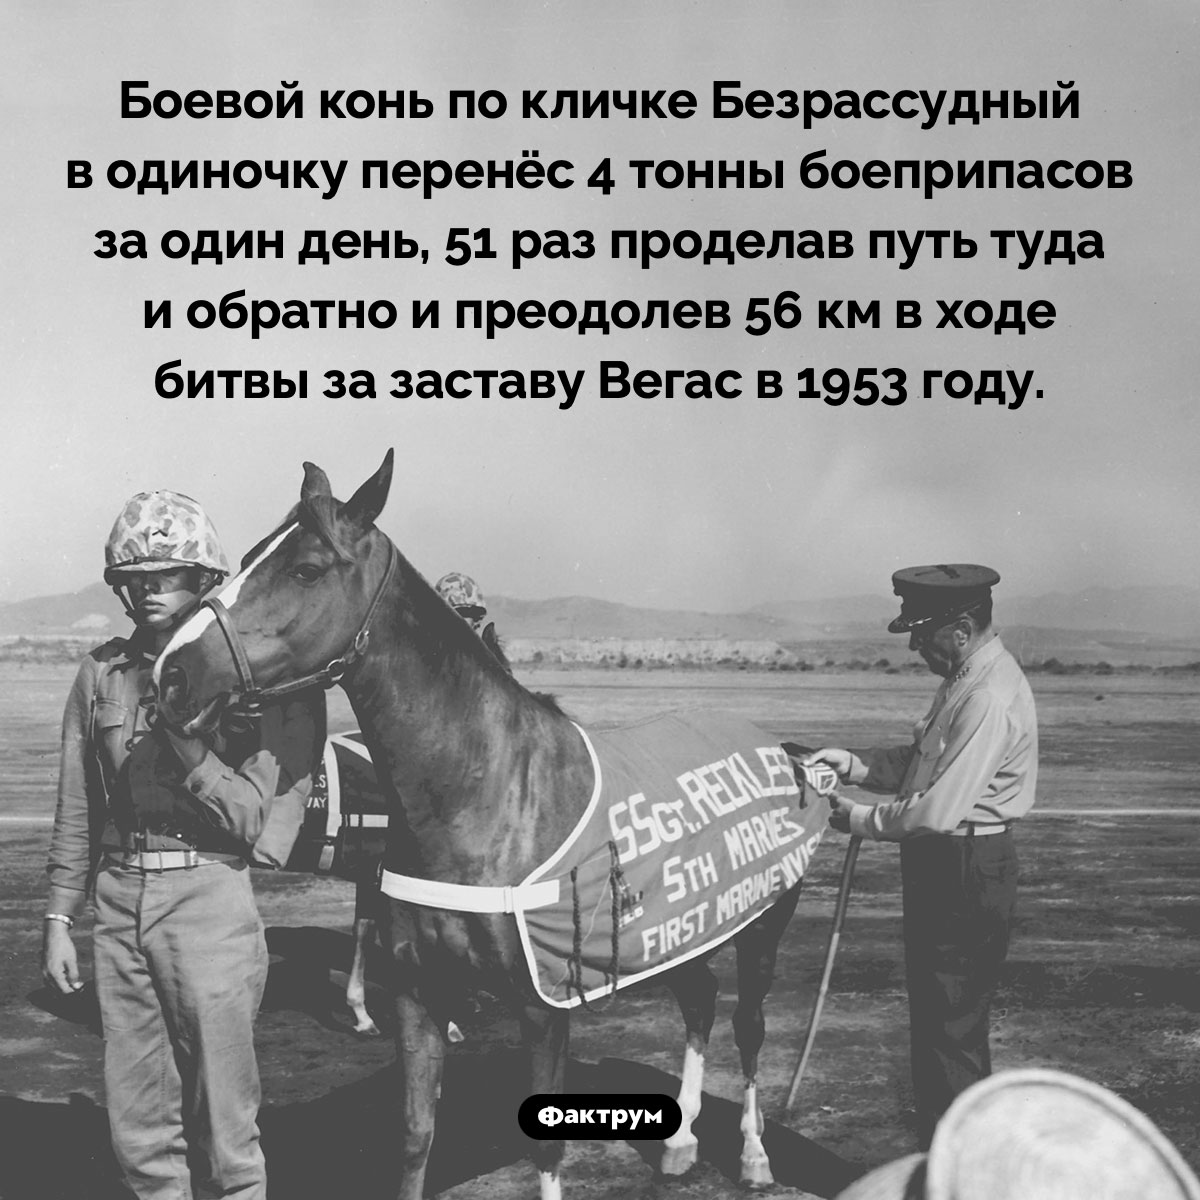 Сержант Безрассудный. Боевой конь по кличке Безрассудный в одиночку перенёс 4 тонны боеприпасов за один день, 51 раз проделав путь туда и обратно и преодолев 56 км в ходе битвы за заставу Вегас в 1953 году.